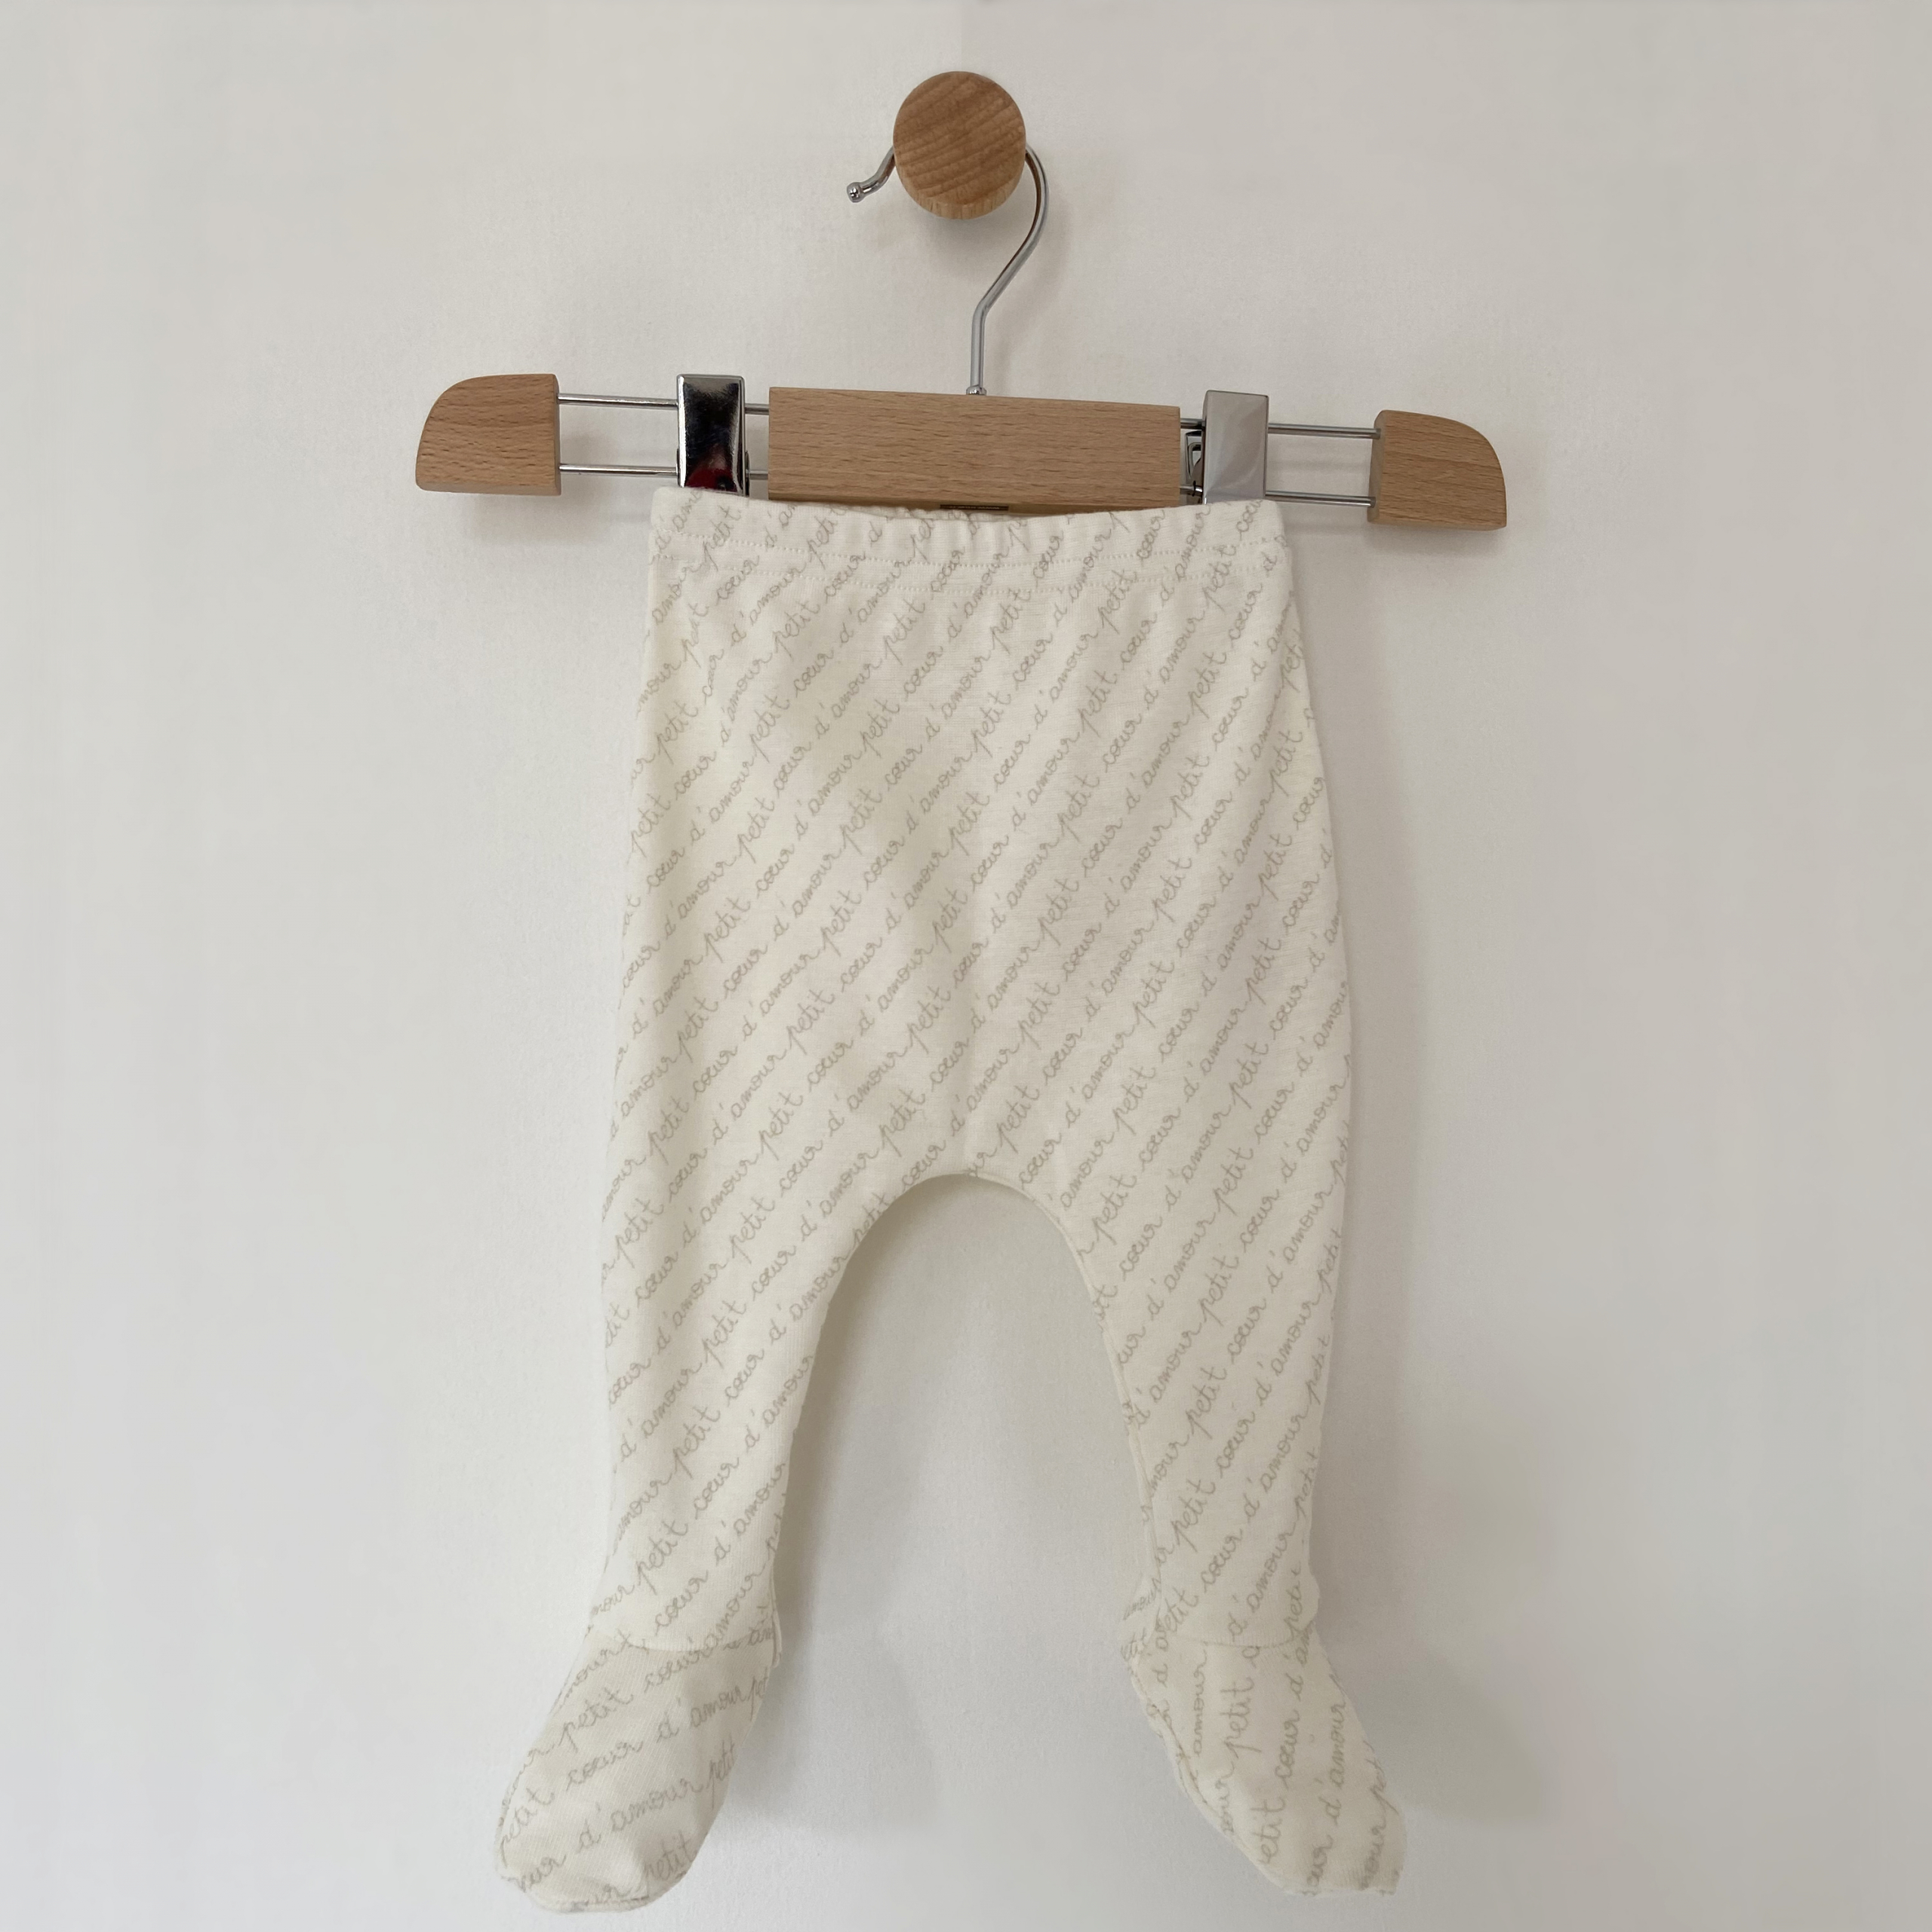 Legging avec pieds Aimeodore Paris Vêtements & accessoires pour bébé, fabriqués en France, éco-responsable & local en coton bio